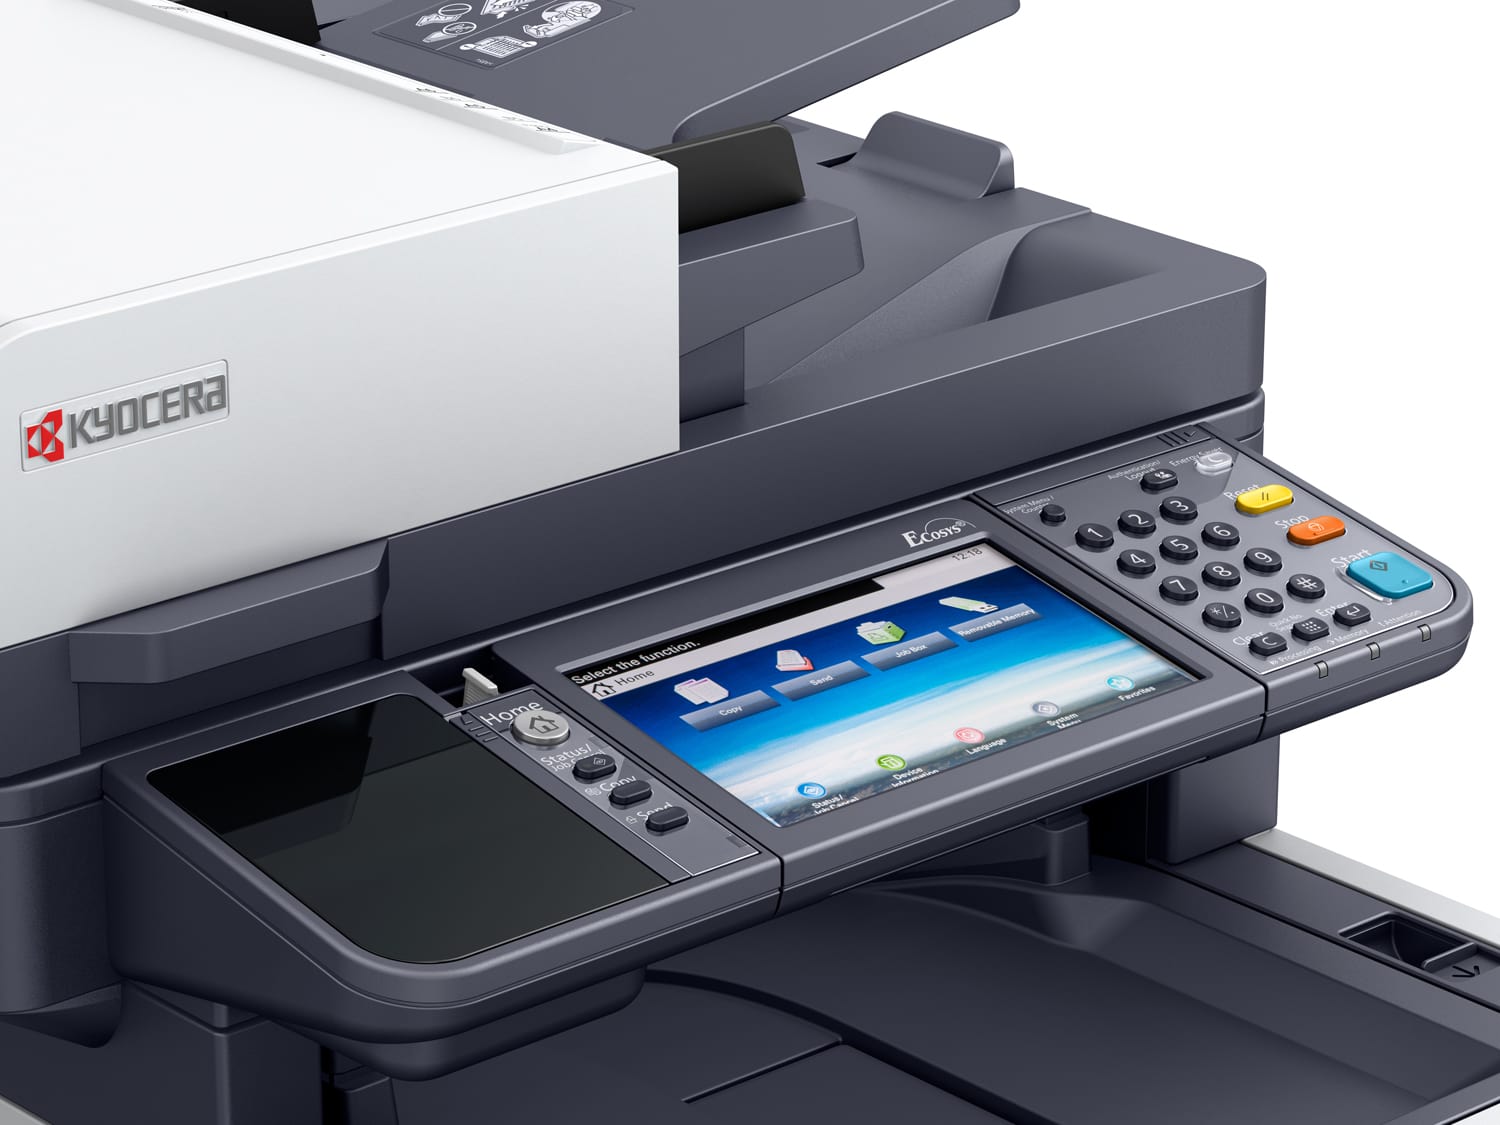 Как выполнять обслуживание принтеров в приложении для устройств UWP